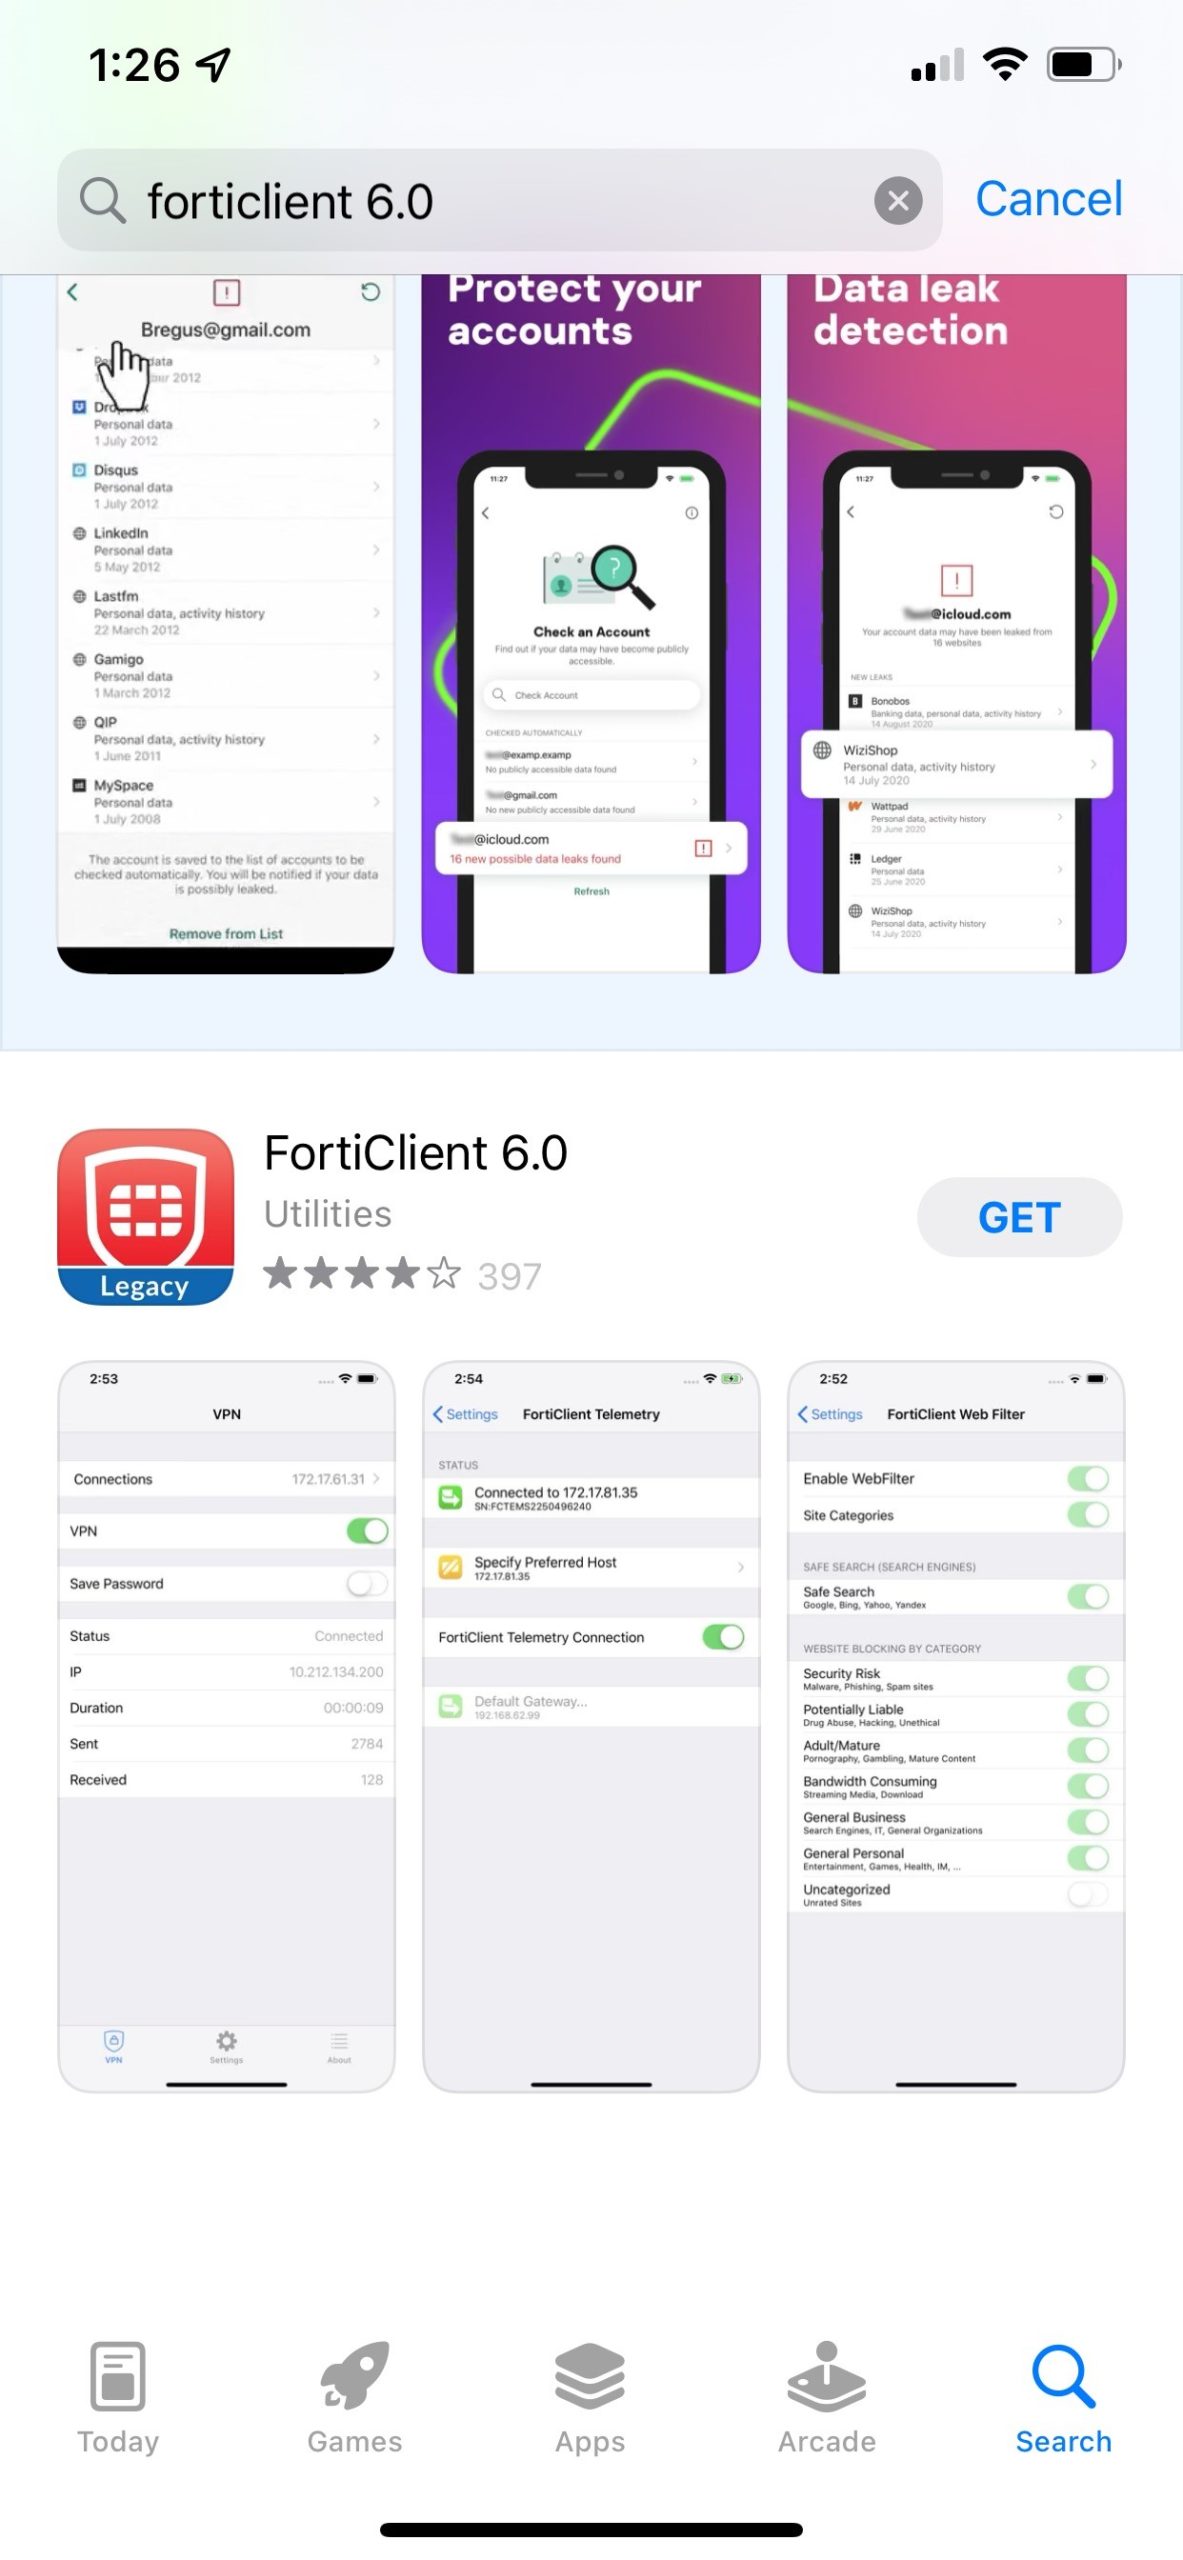 VPN 7 na App Store